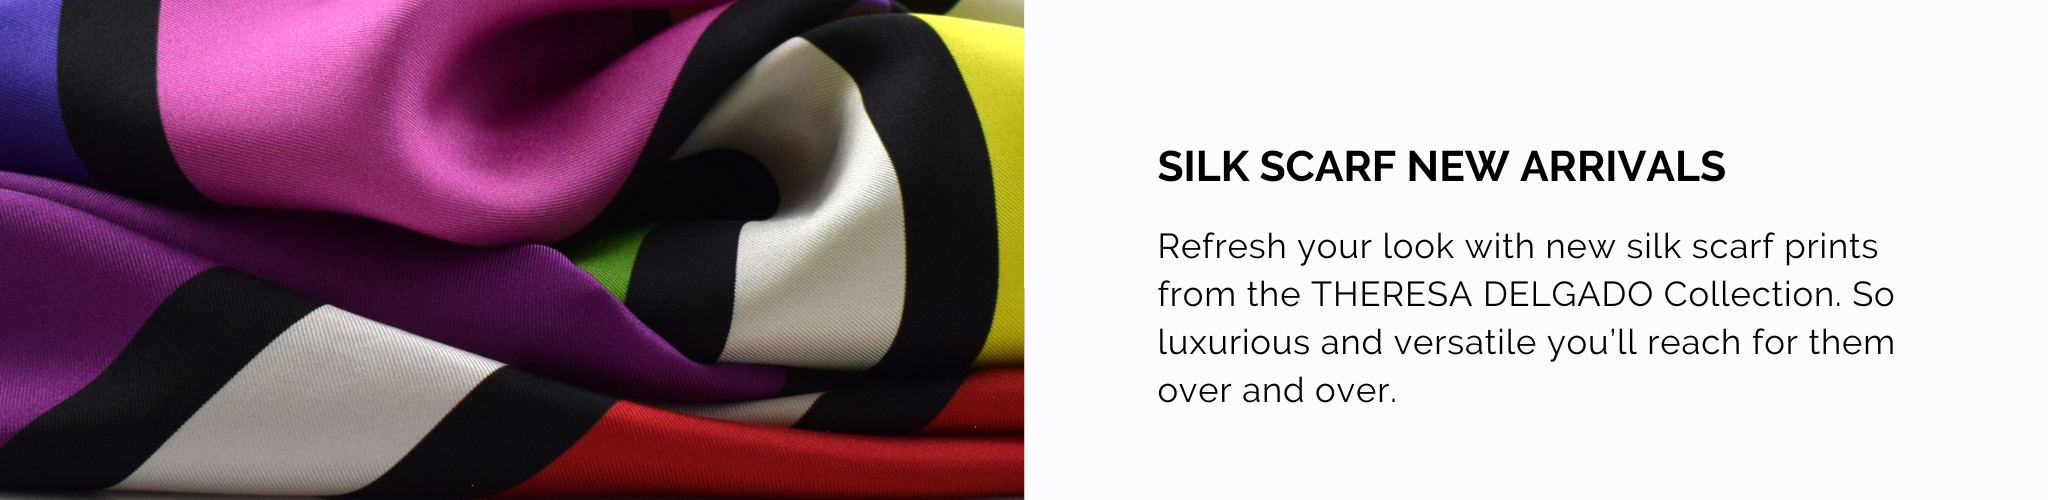 Silk Scarf New Arrivals | THERESA DELGADO Silk Scarf Collection